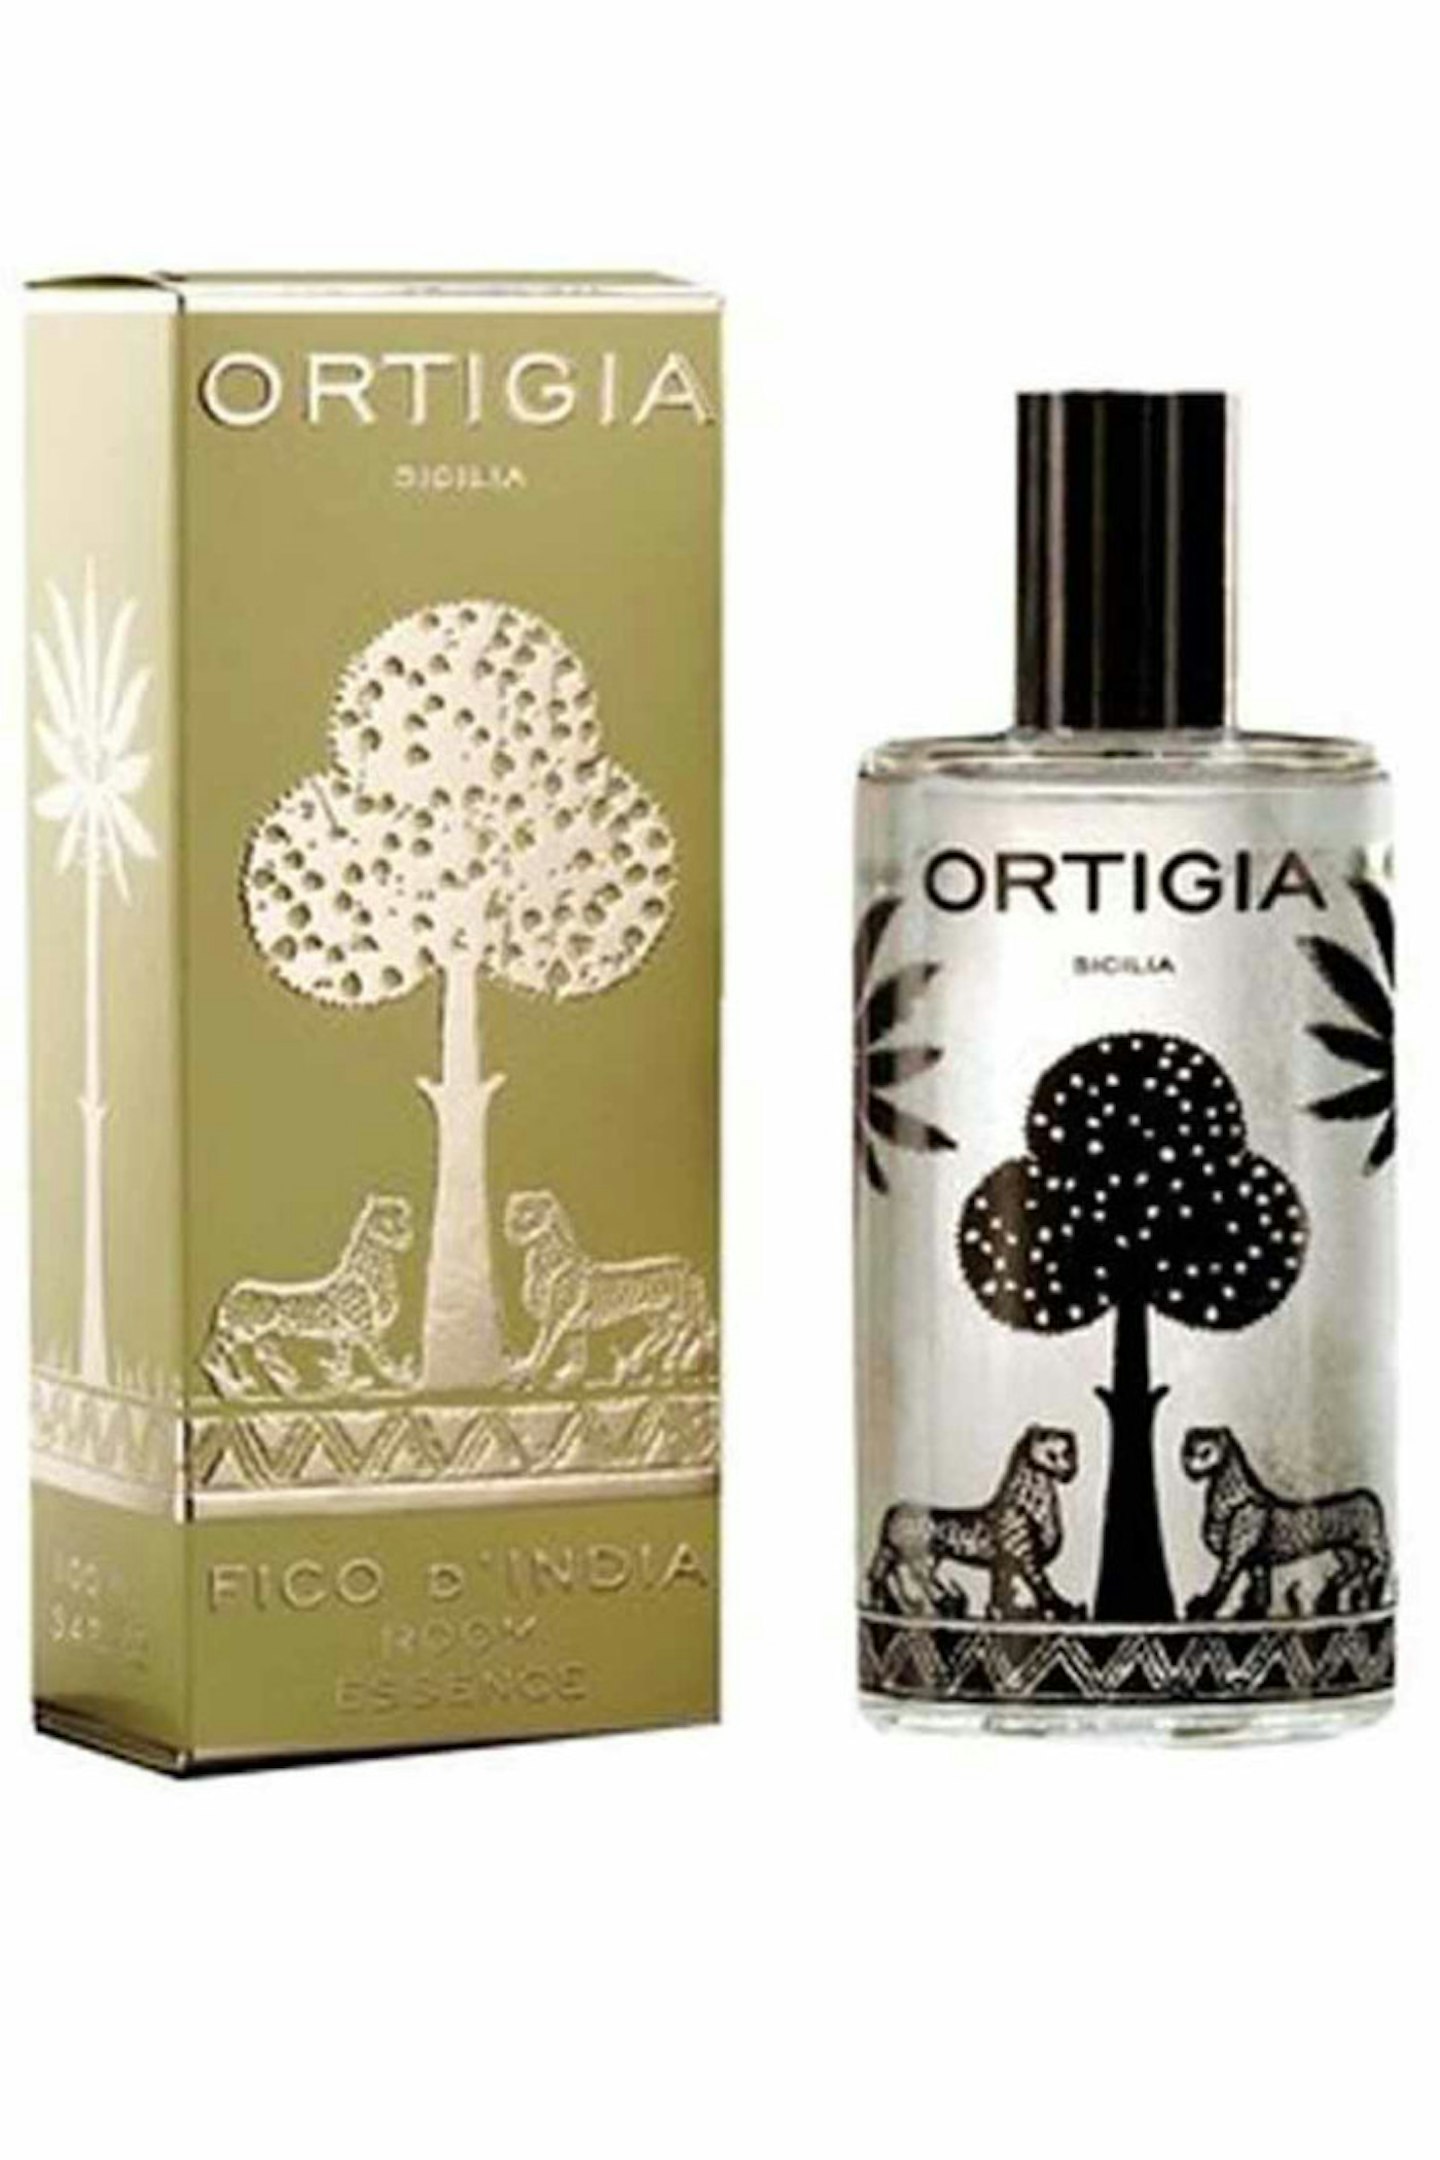 7. Ortiga India Fragrance